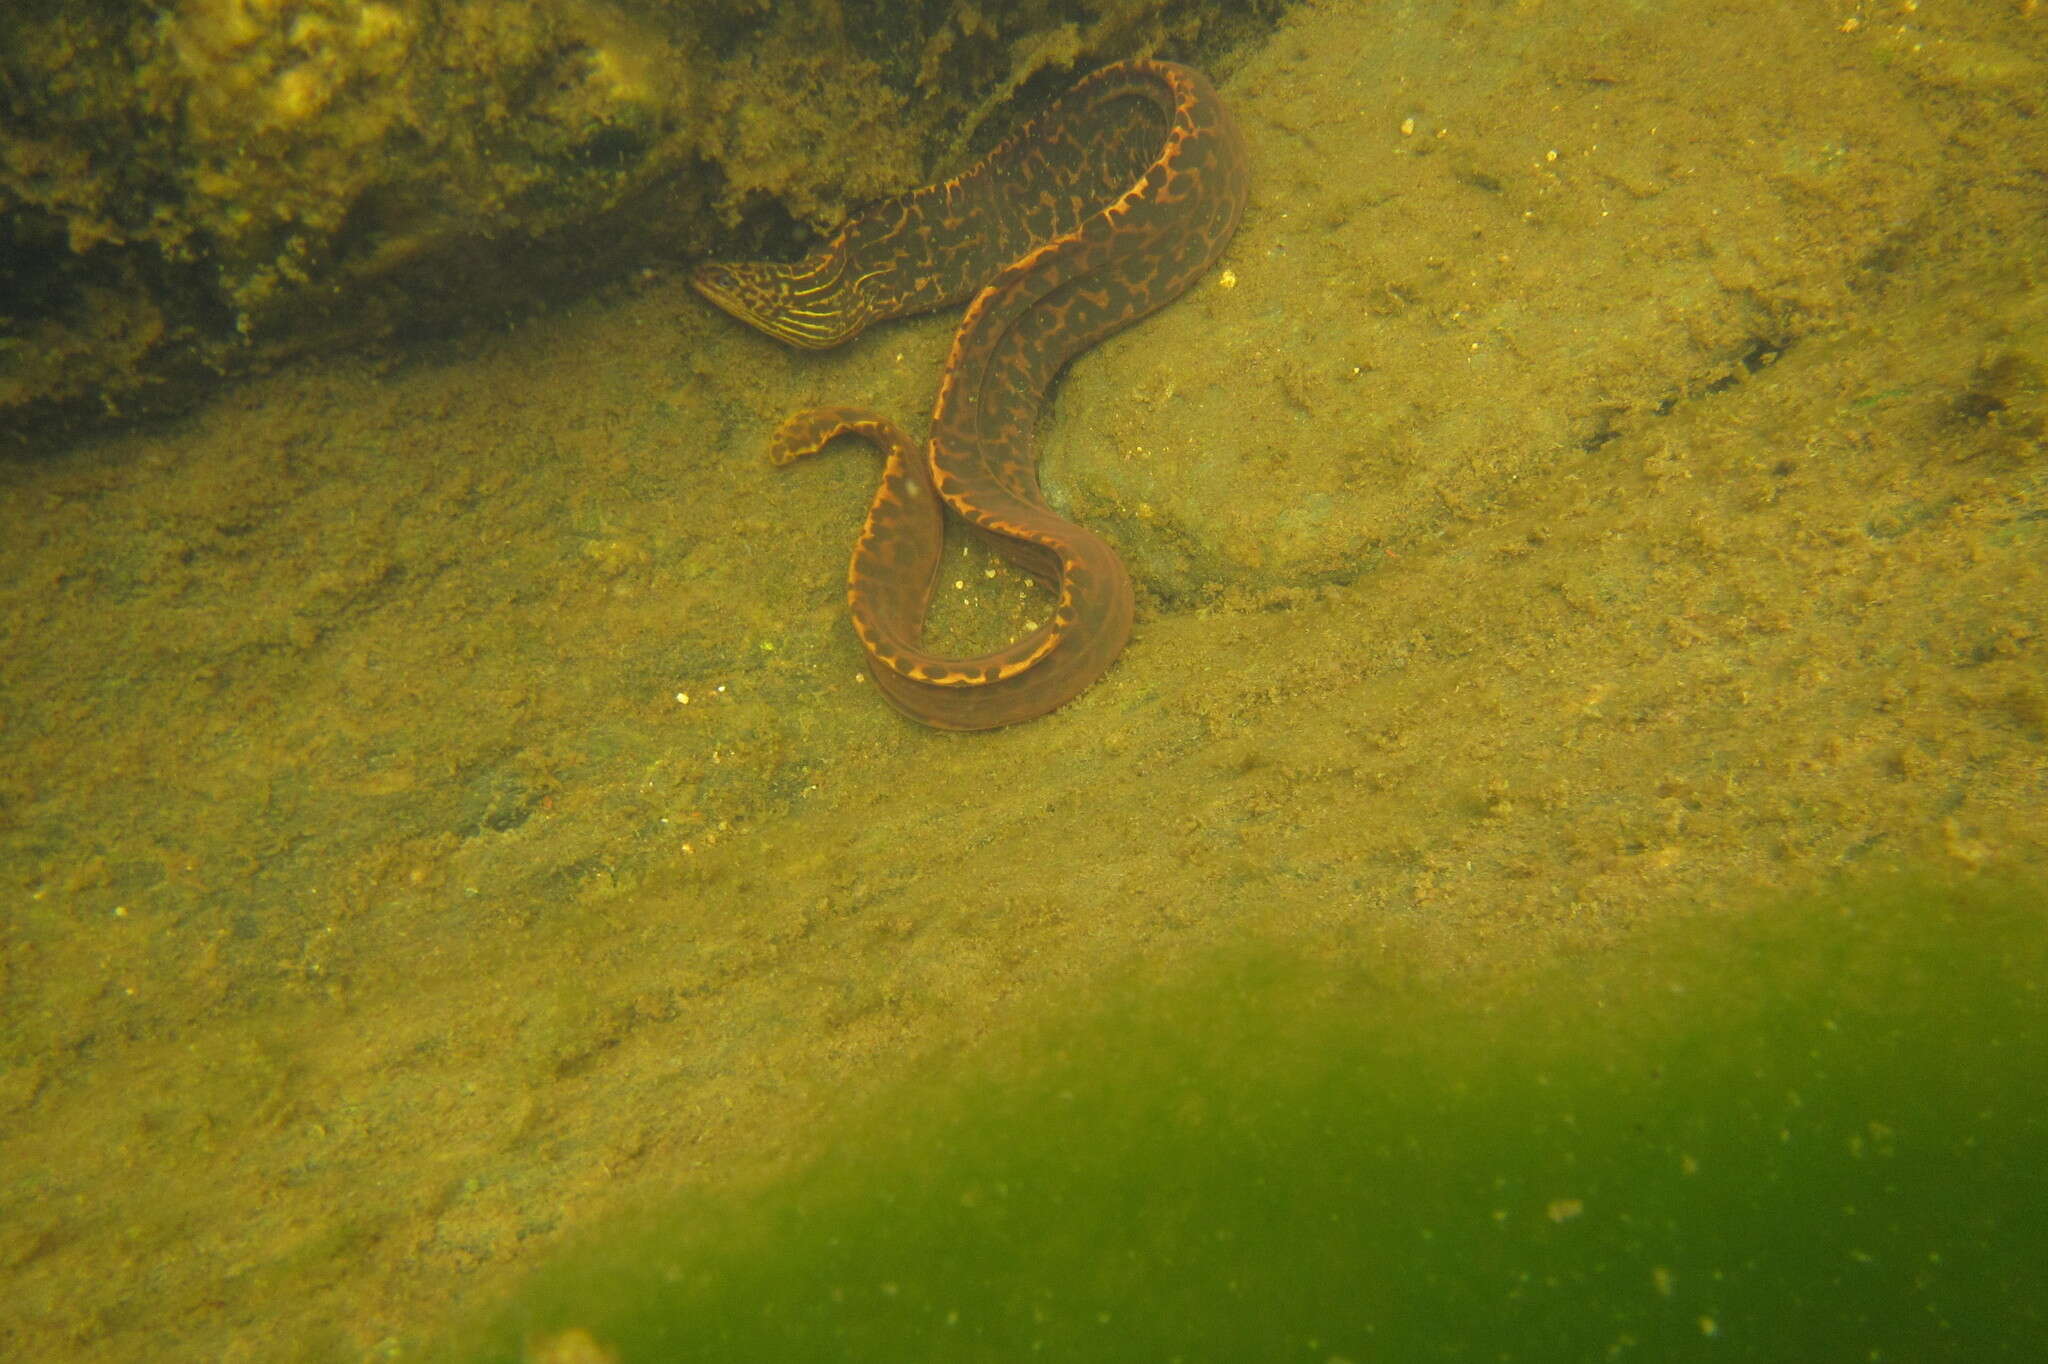 Image of Freshwater Moray